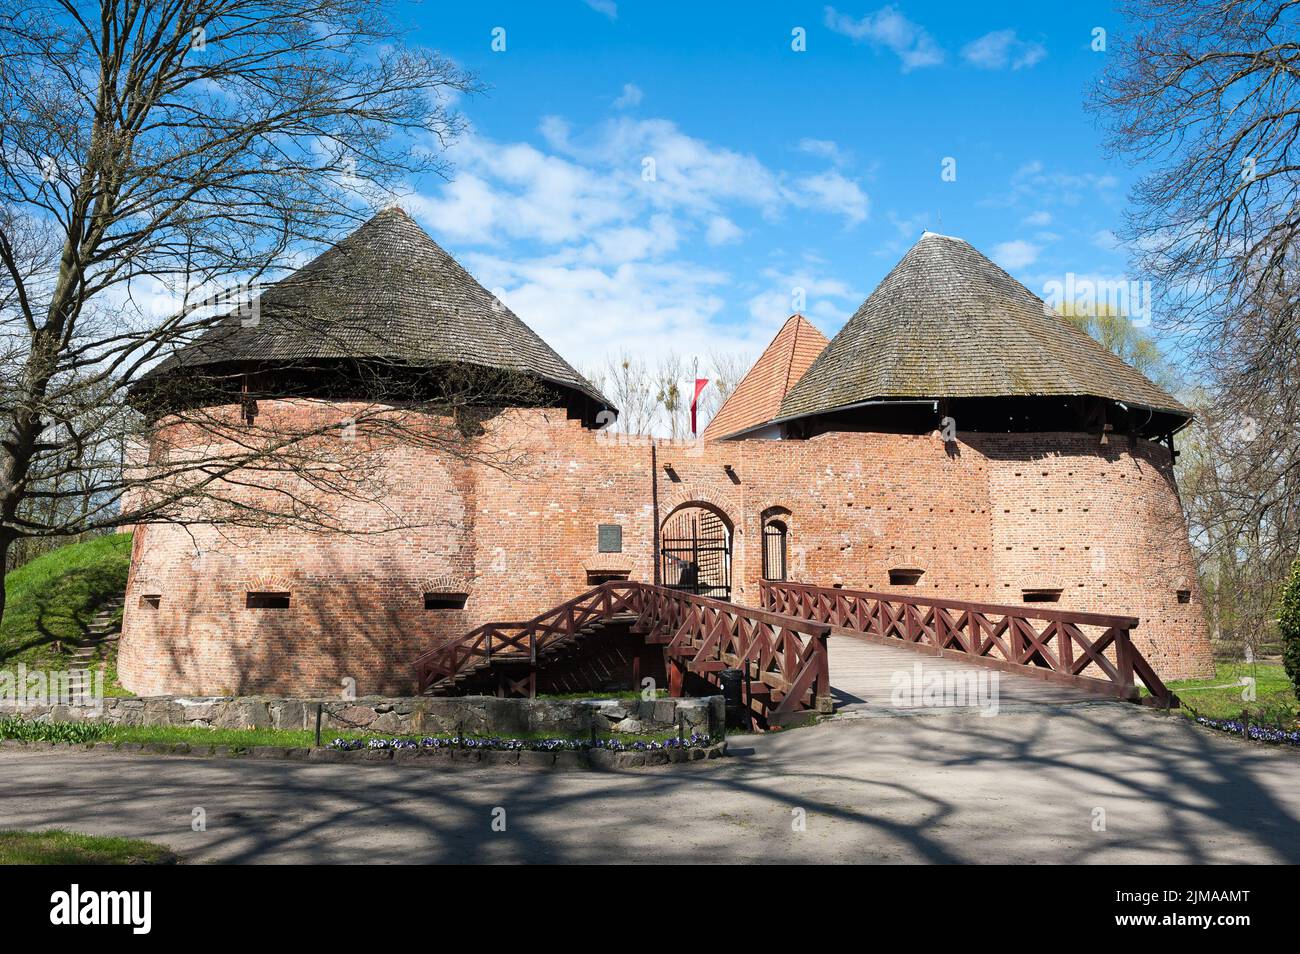 Castle in Miedzyrzecz, Lubusz Voivodeship, Poland Stock Photo